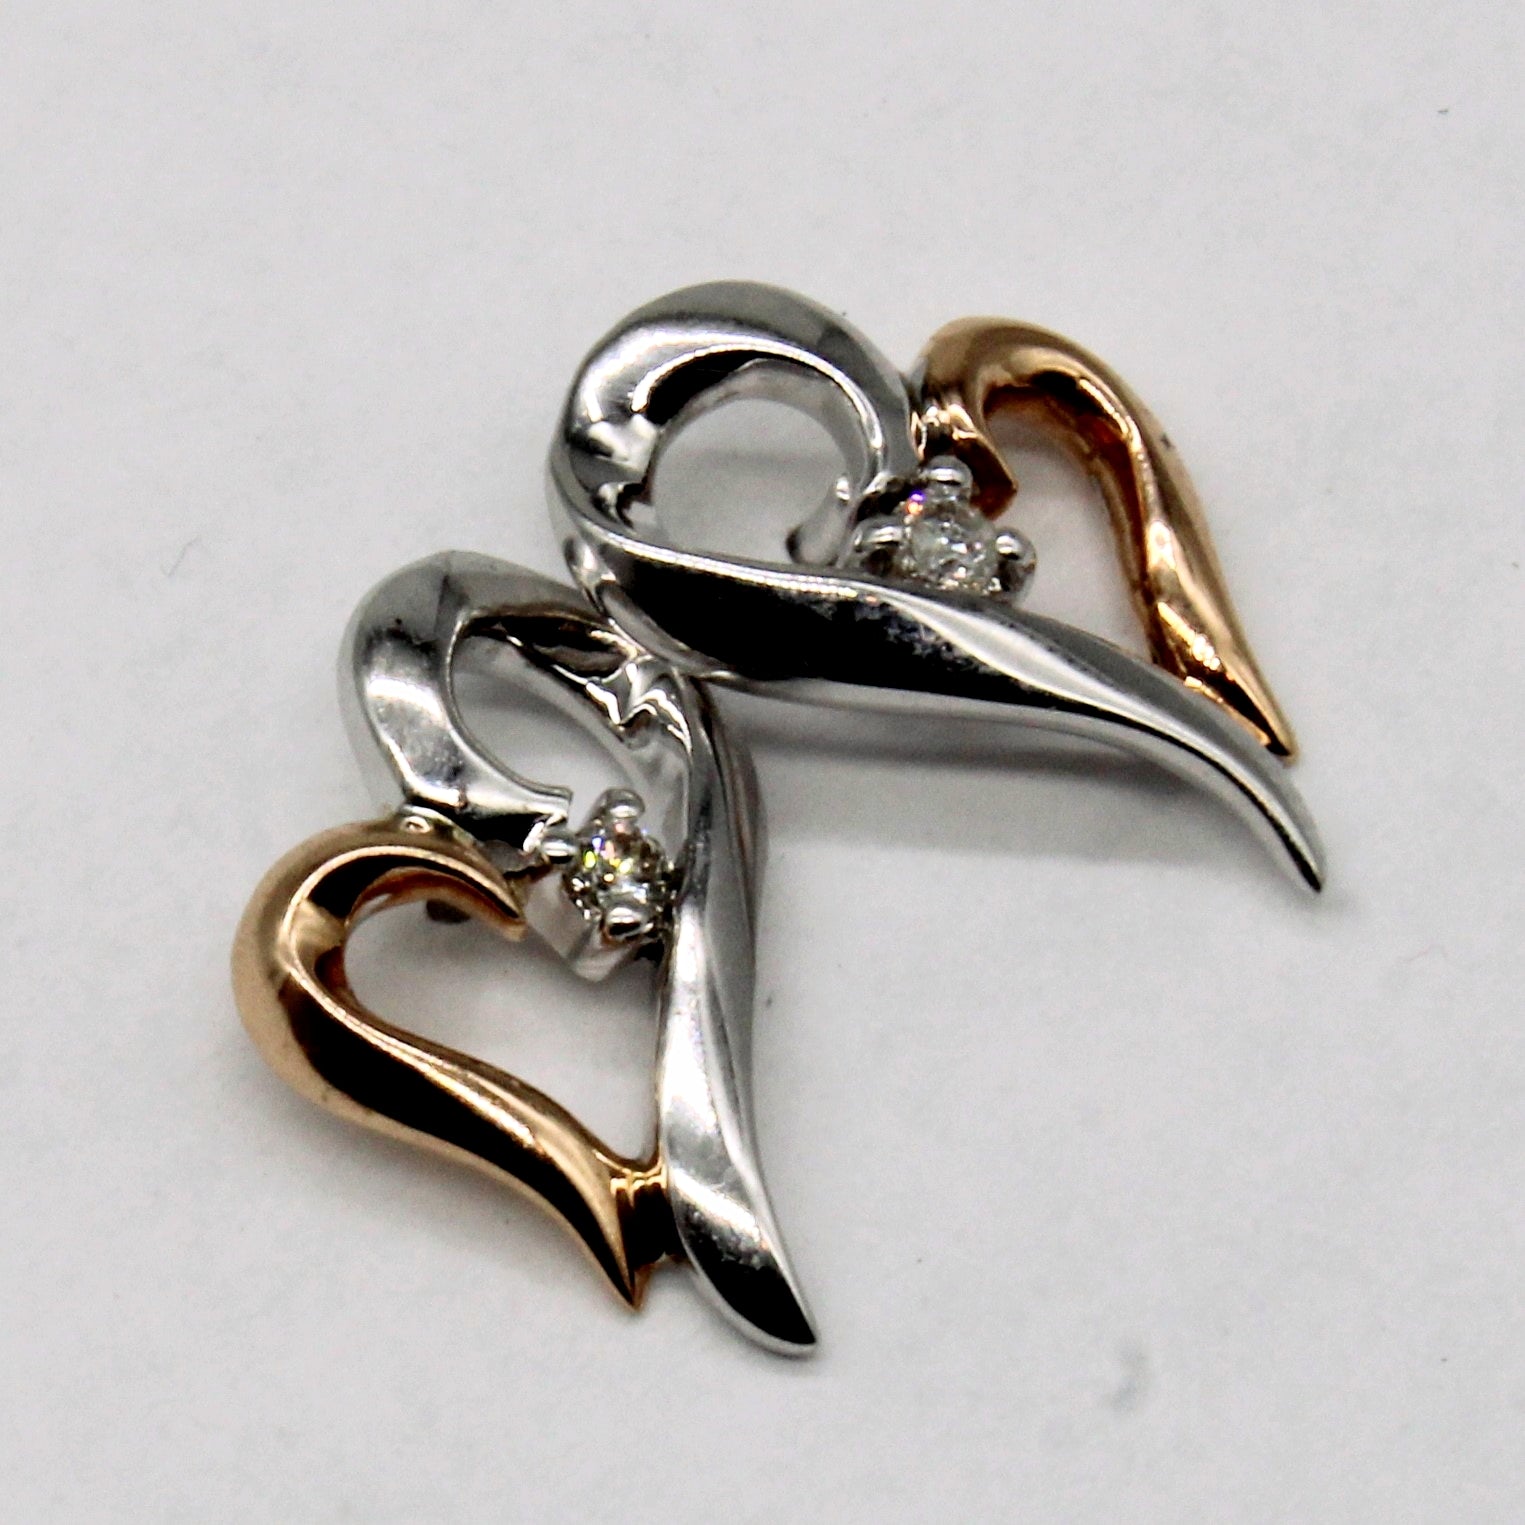 Diamond Heart Earrings | 0.06ctw |